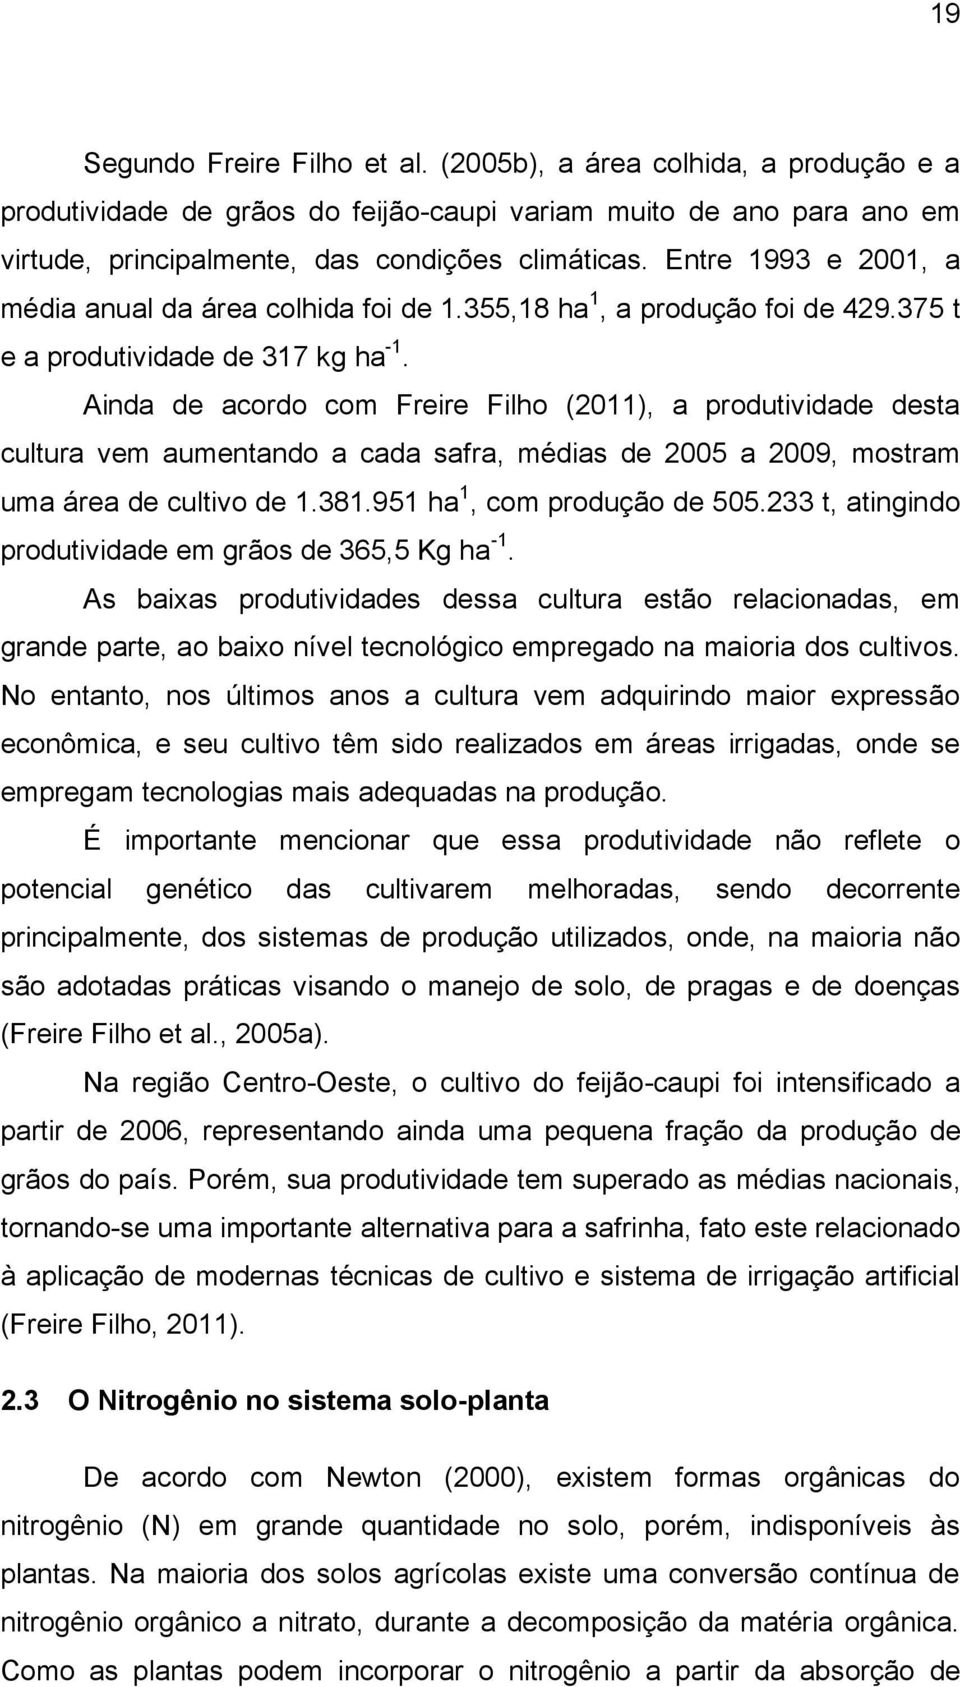 Ainda de acordo com Freire Filho (2011), a produtividade desta cultura vem aumentando a cada safra, médias de 2005 a 2009, mostram uma área de cultivo de 1.381.951 ha 1, com produção de 505.